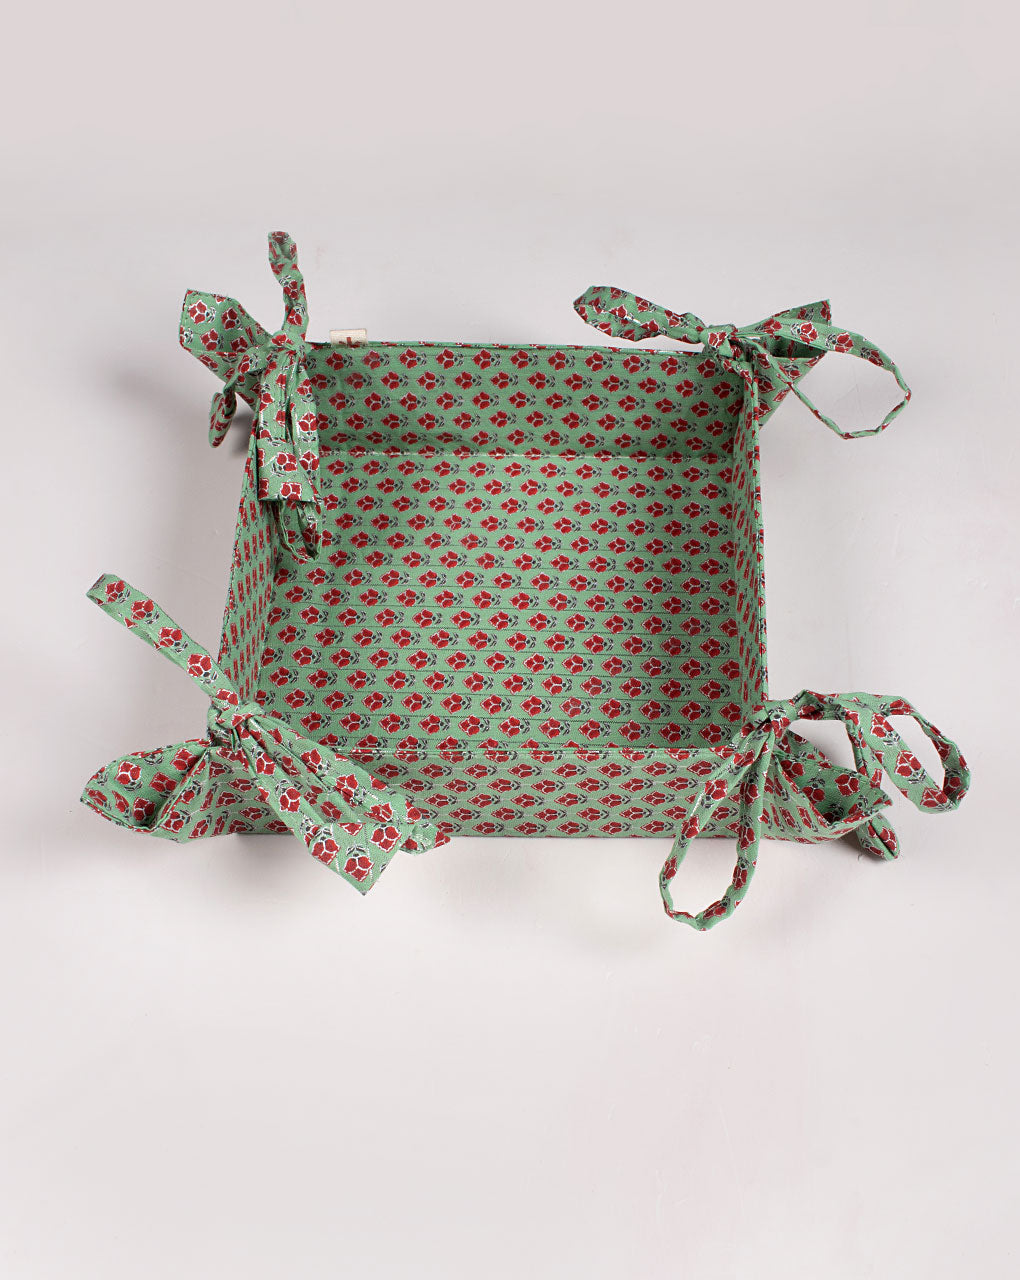 Handmade Cotton Basket - Fabriclore.com